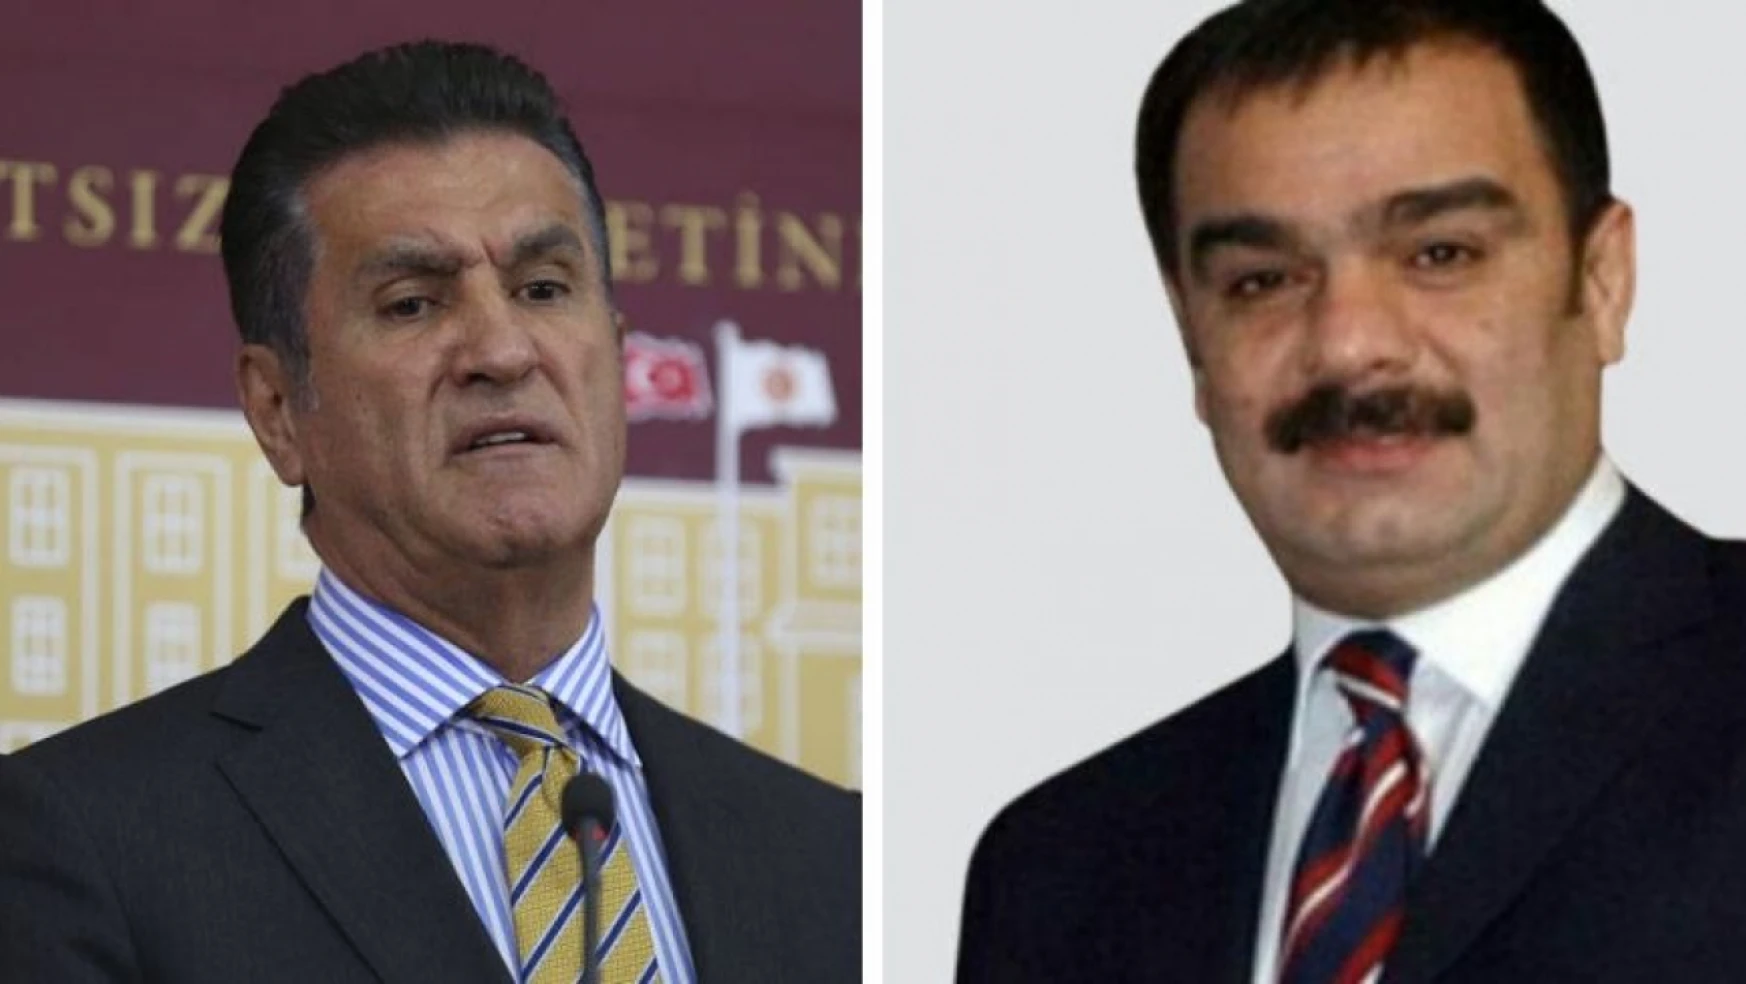 CHP Erzincan Milletvekili Mustafa Sarıgül'e yumruklu saldırı... Alacak verecek davası mı?